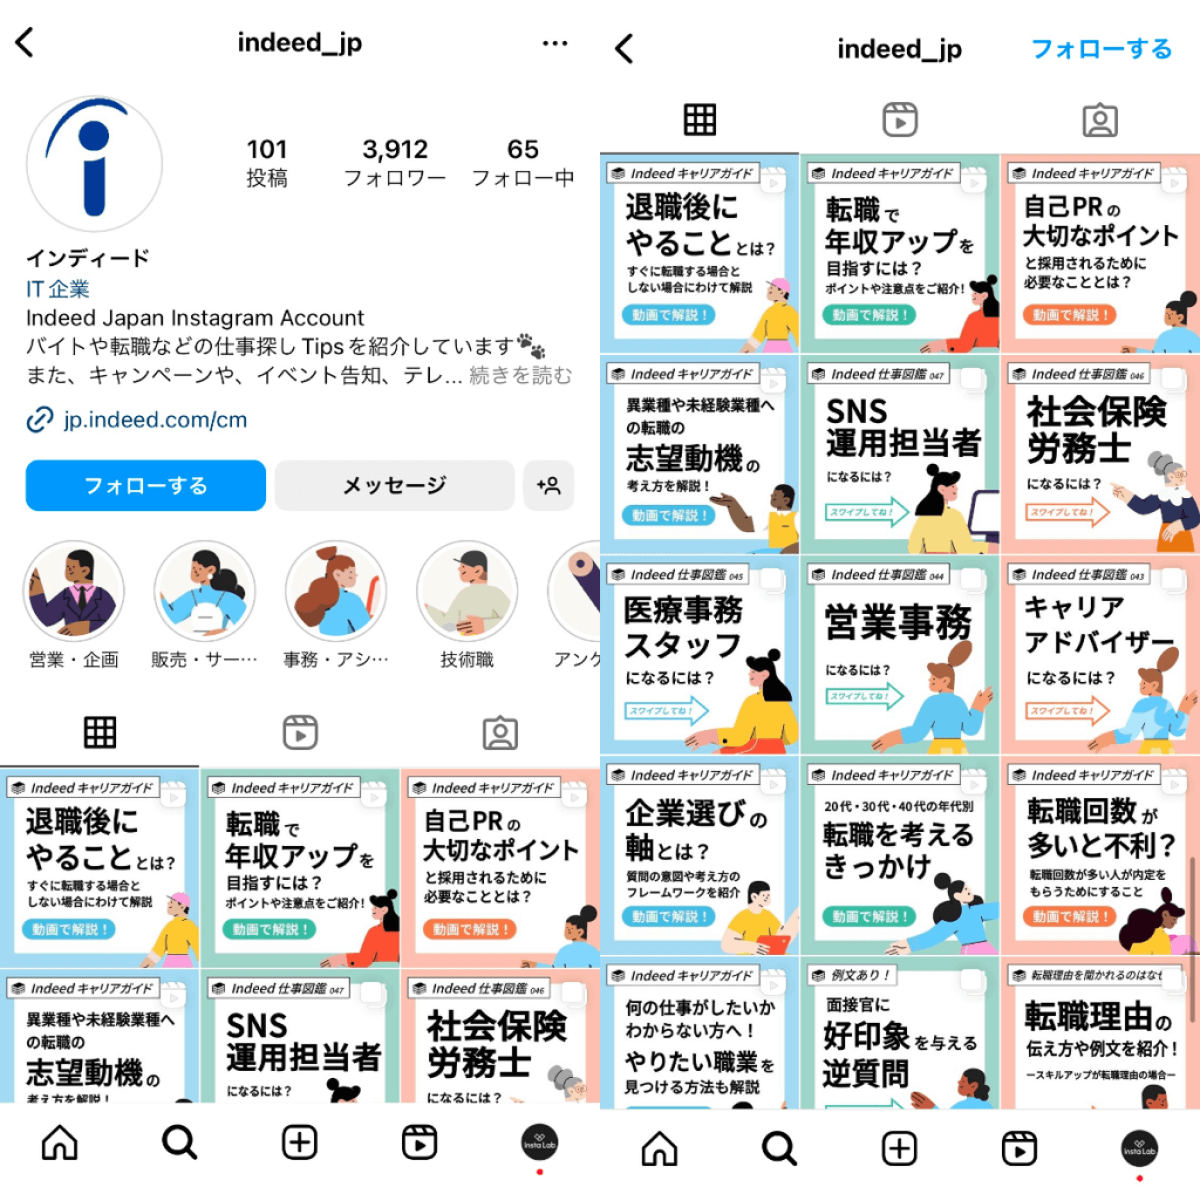 instagram-account-indeed-jp